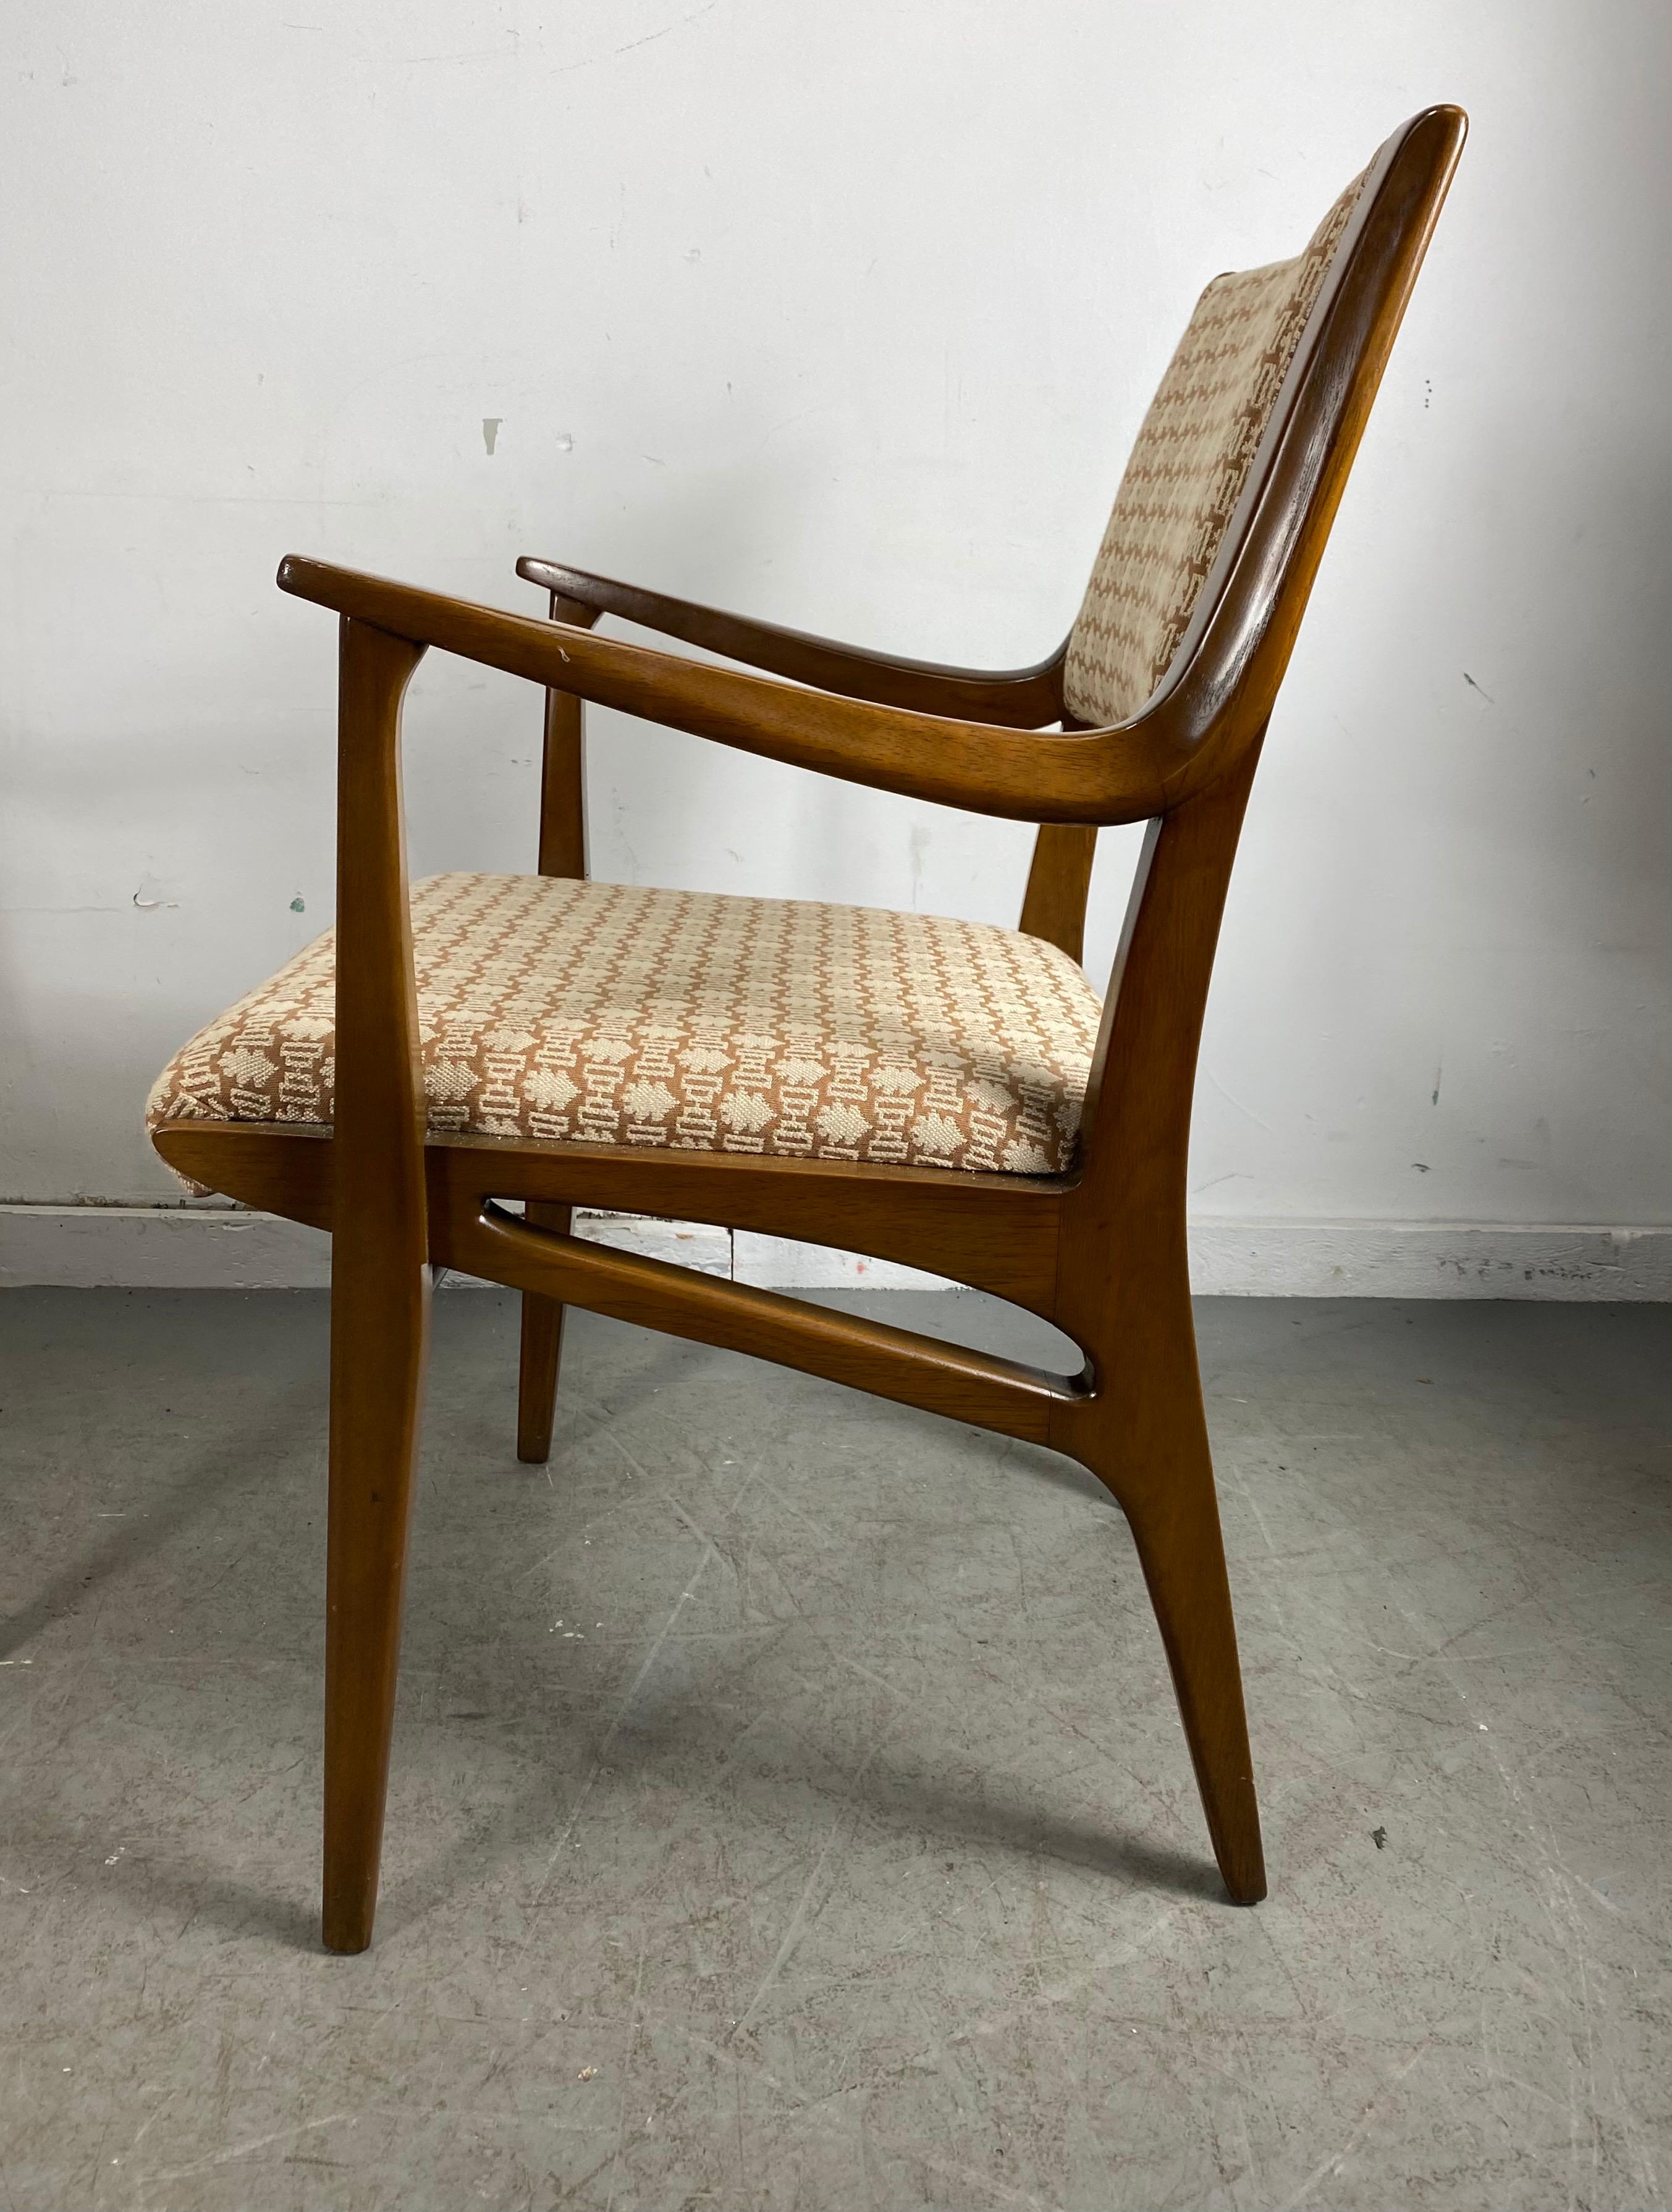 Paire classique de fauteuils modernistes par John Van Koert pour Drexe, état original étonnant, solide. Construction robuste, qualité supérieure, noyer sculpté, extrêmement confortable.